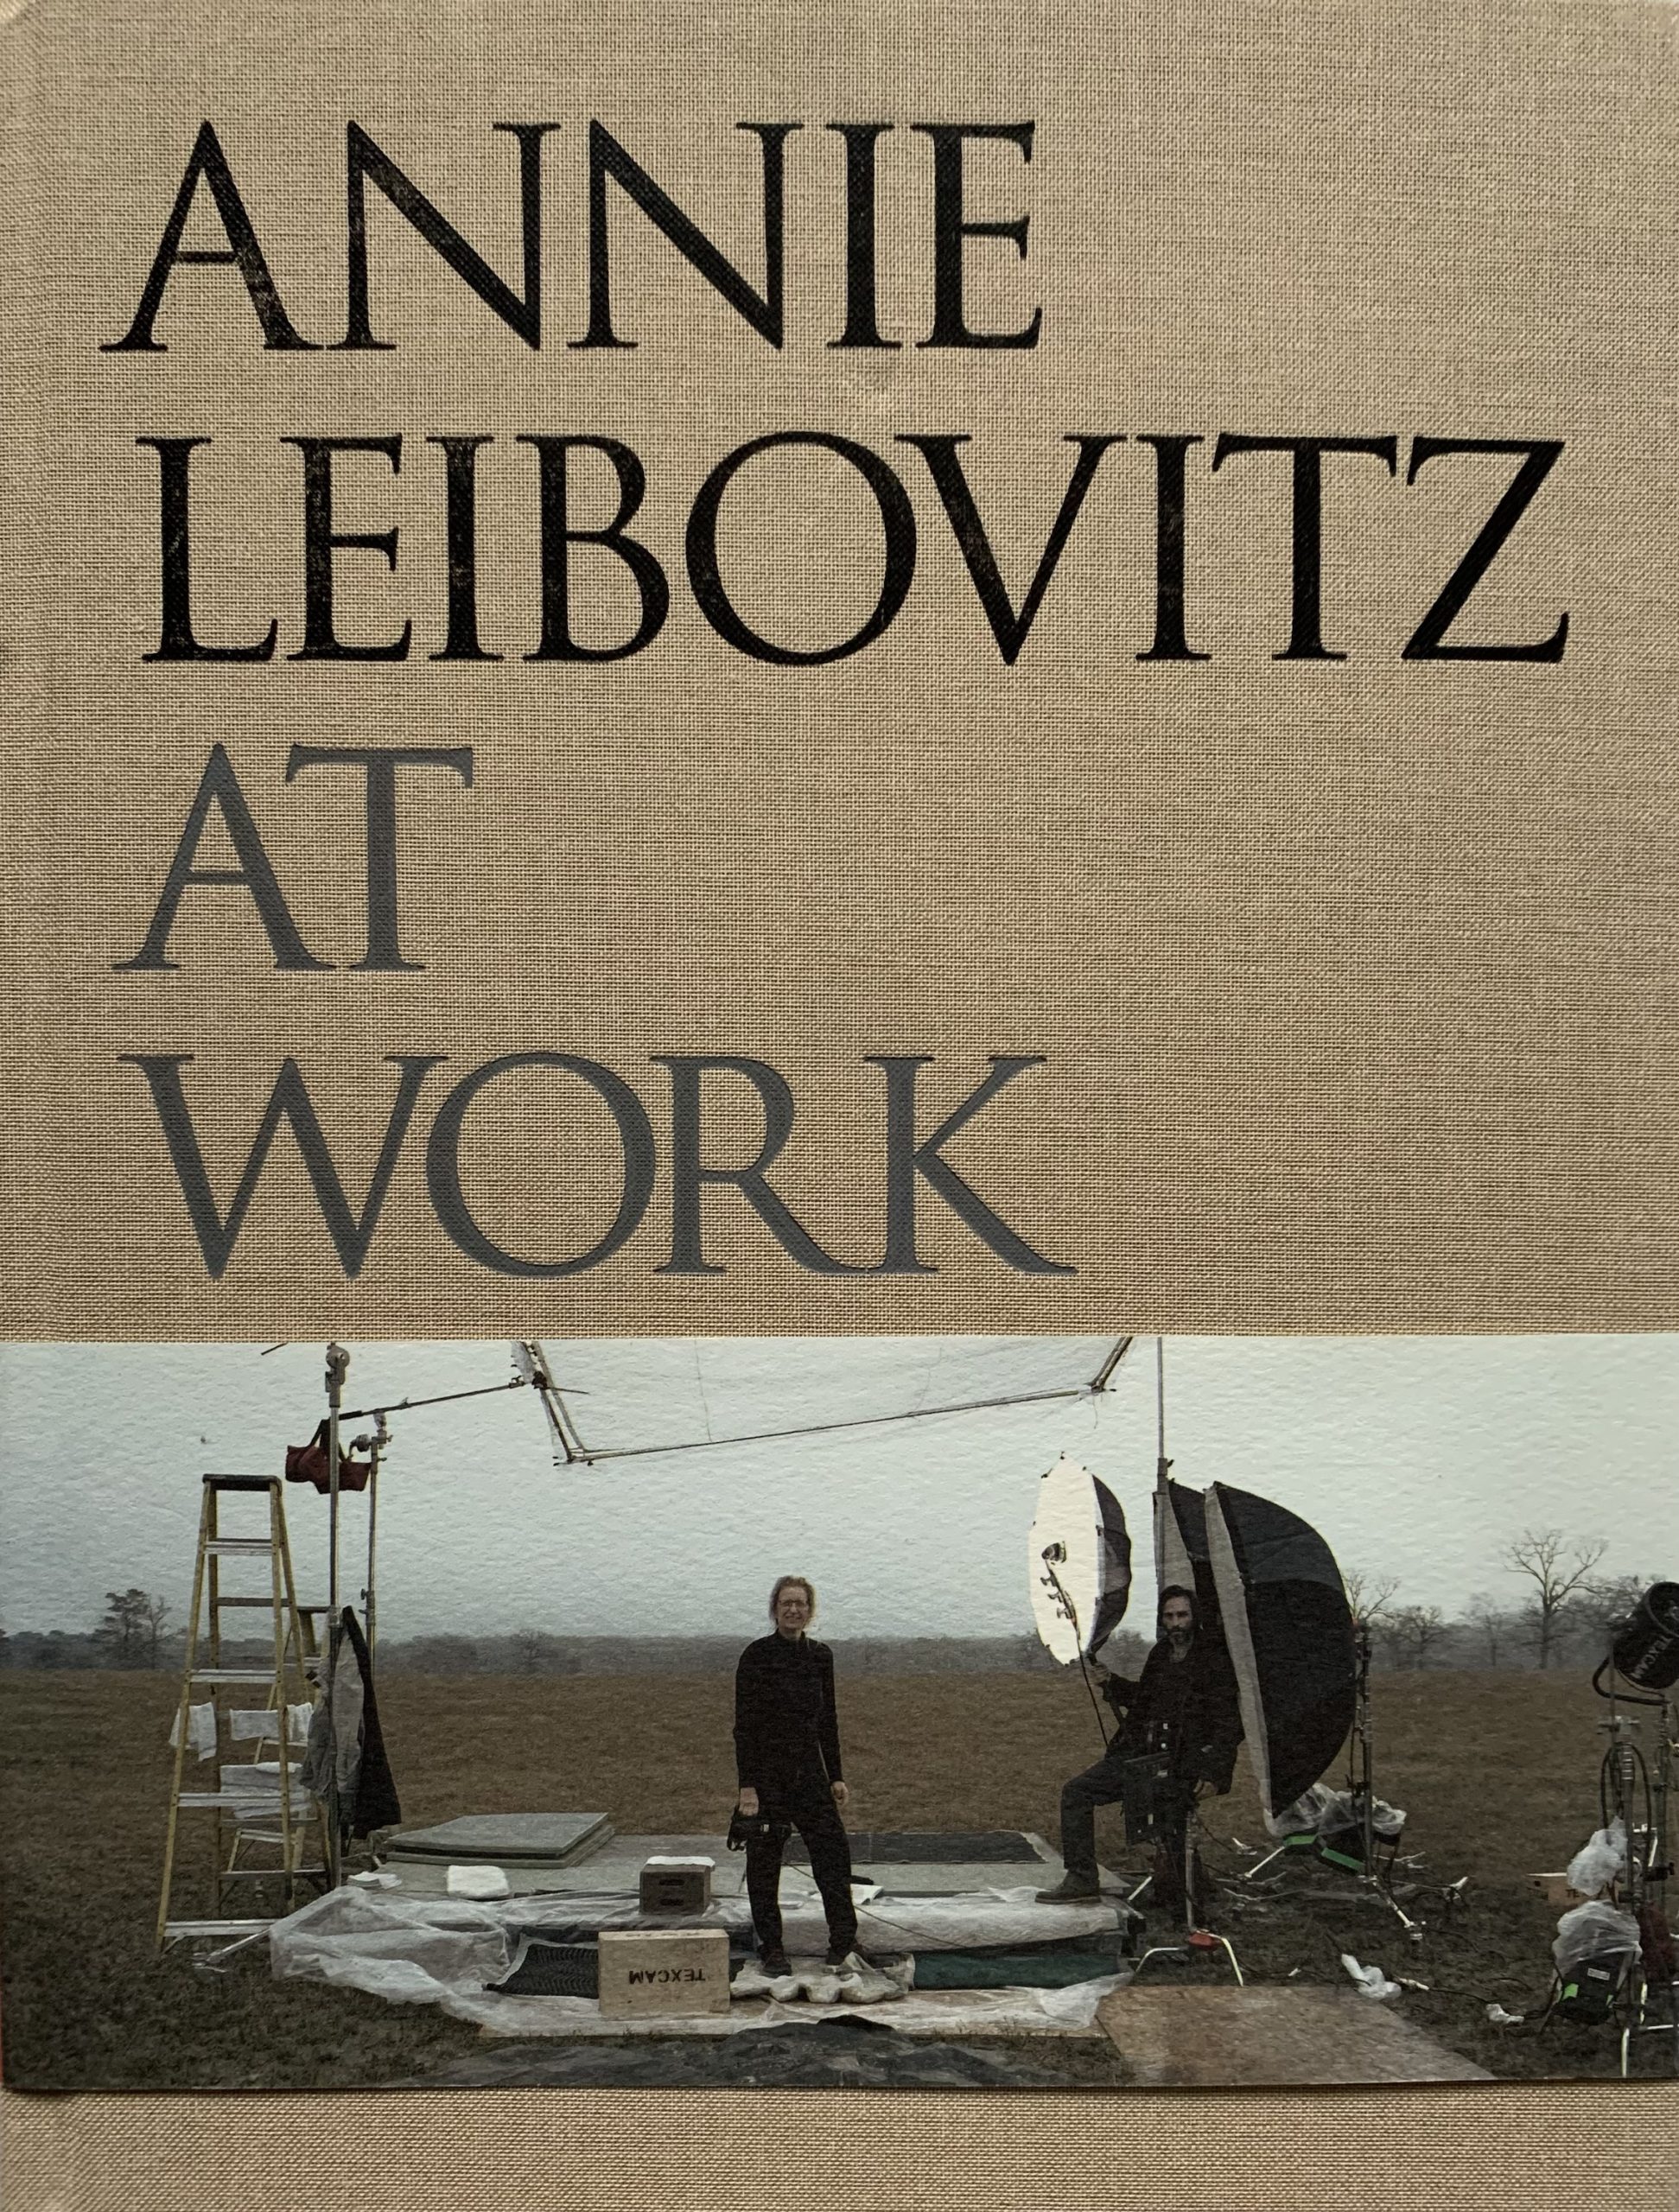 Annie Leibovitz: At Work